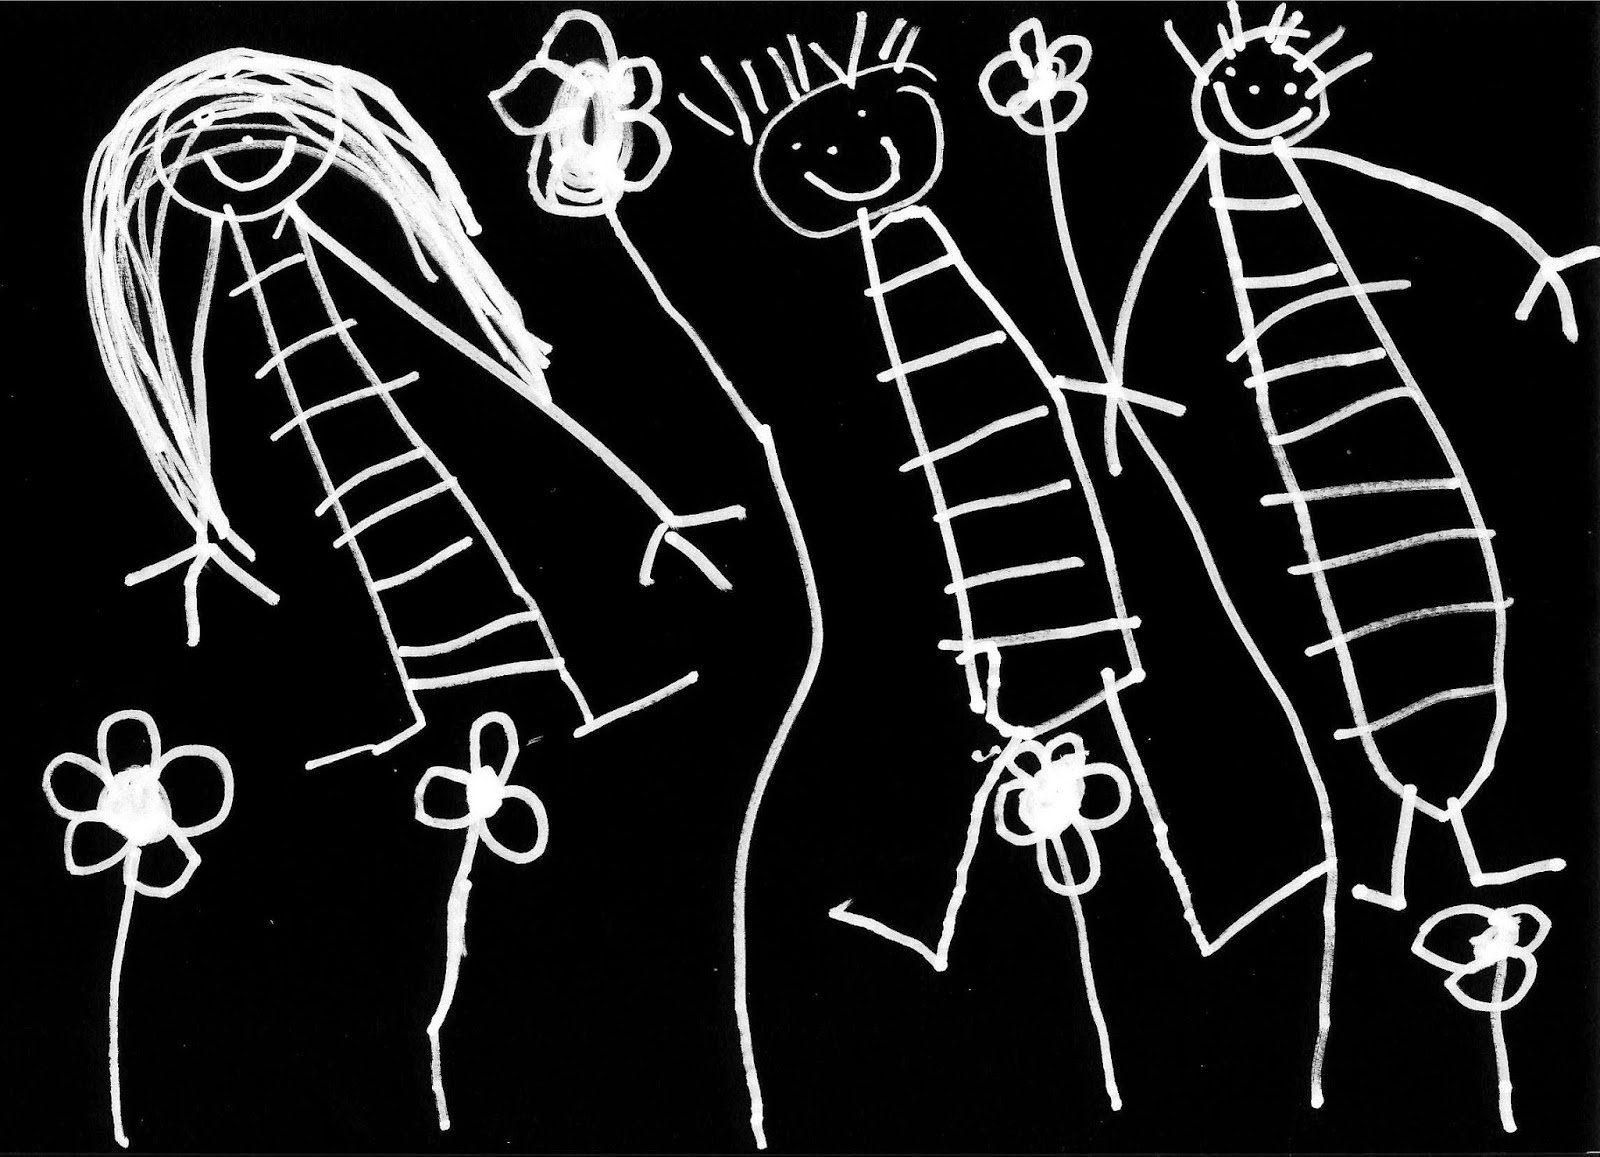 Infancia dibujada desde la infancia: niños sonrientes y flores en trazos blancos sobre fondo negro ©Selene Garrido Guil